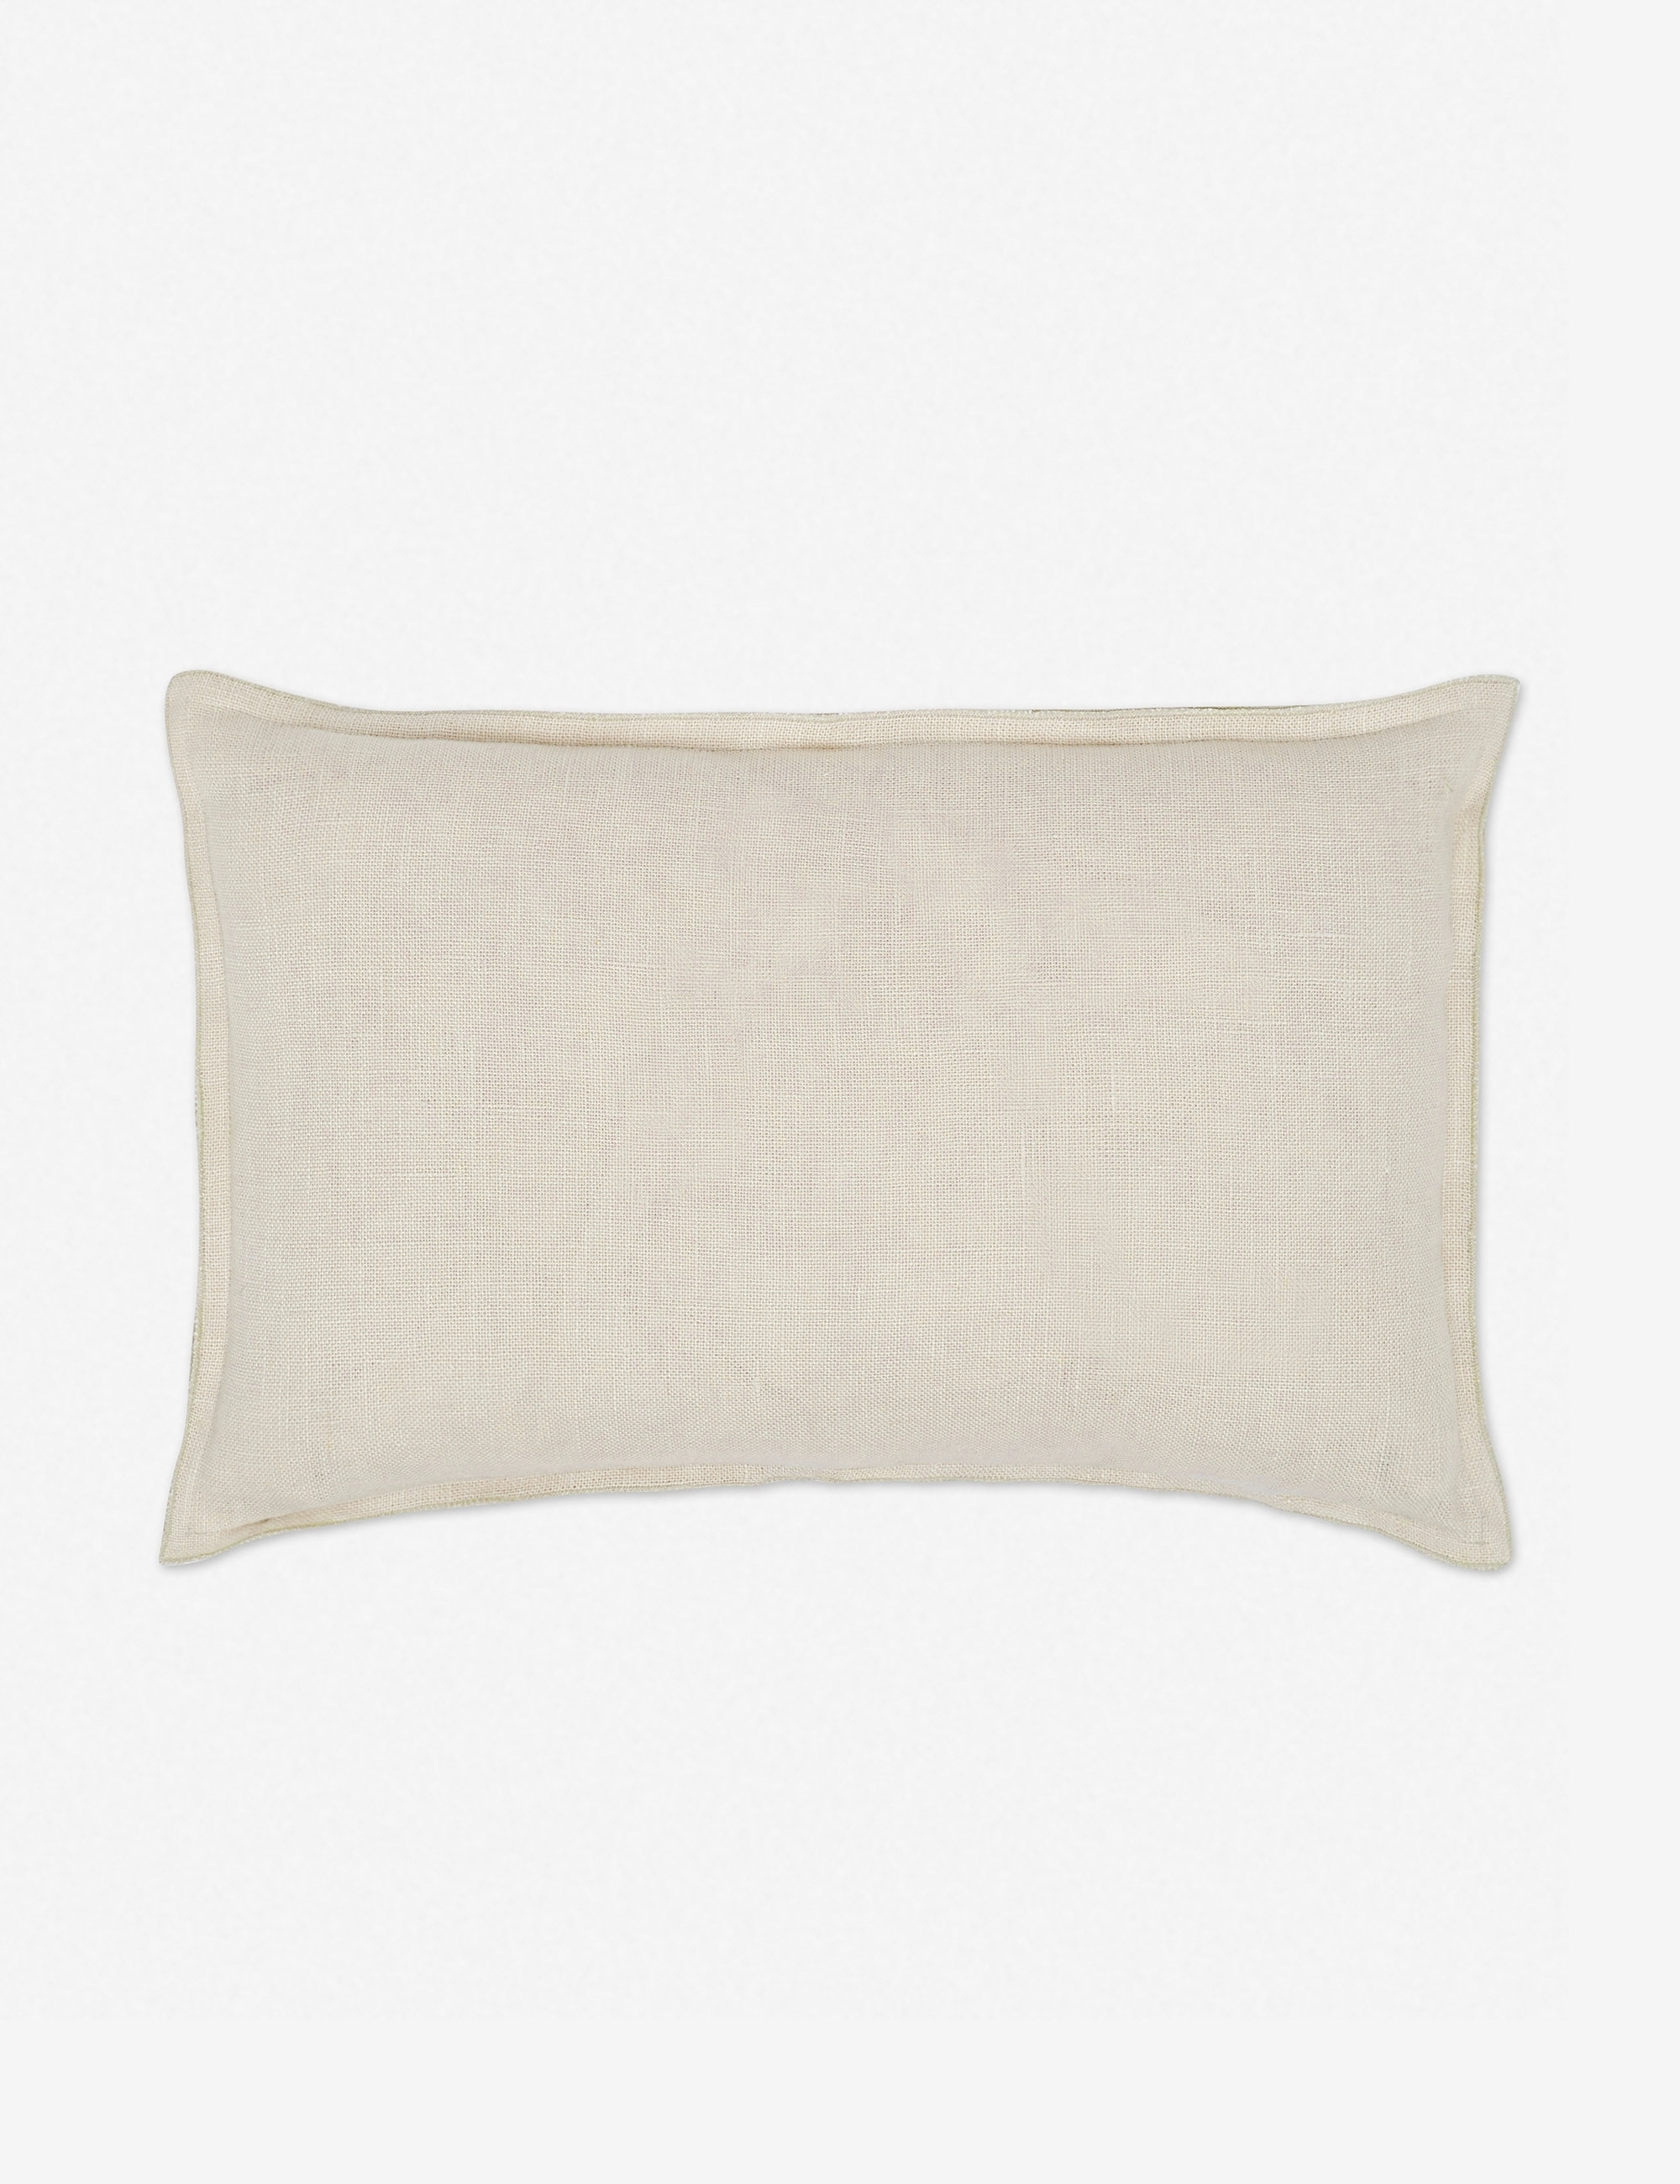 Arlo Linen Lumbar Pillow, Light Natural - Image 0